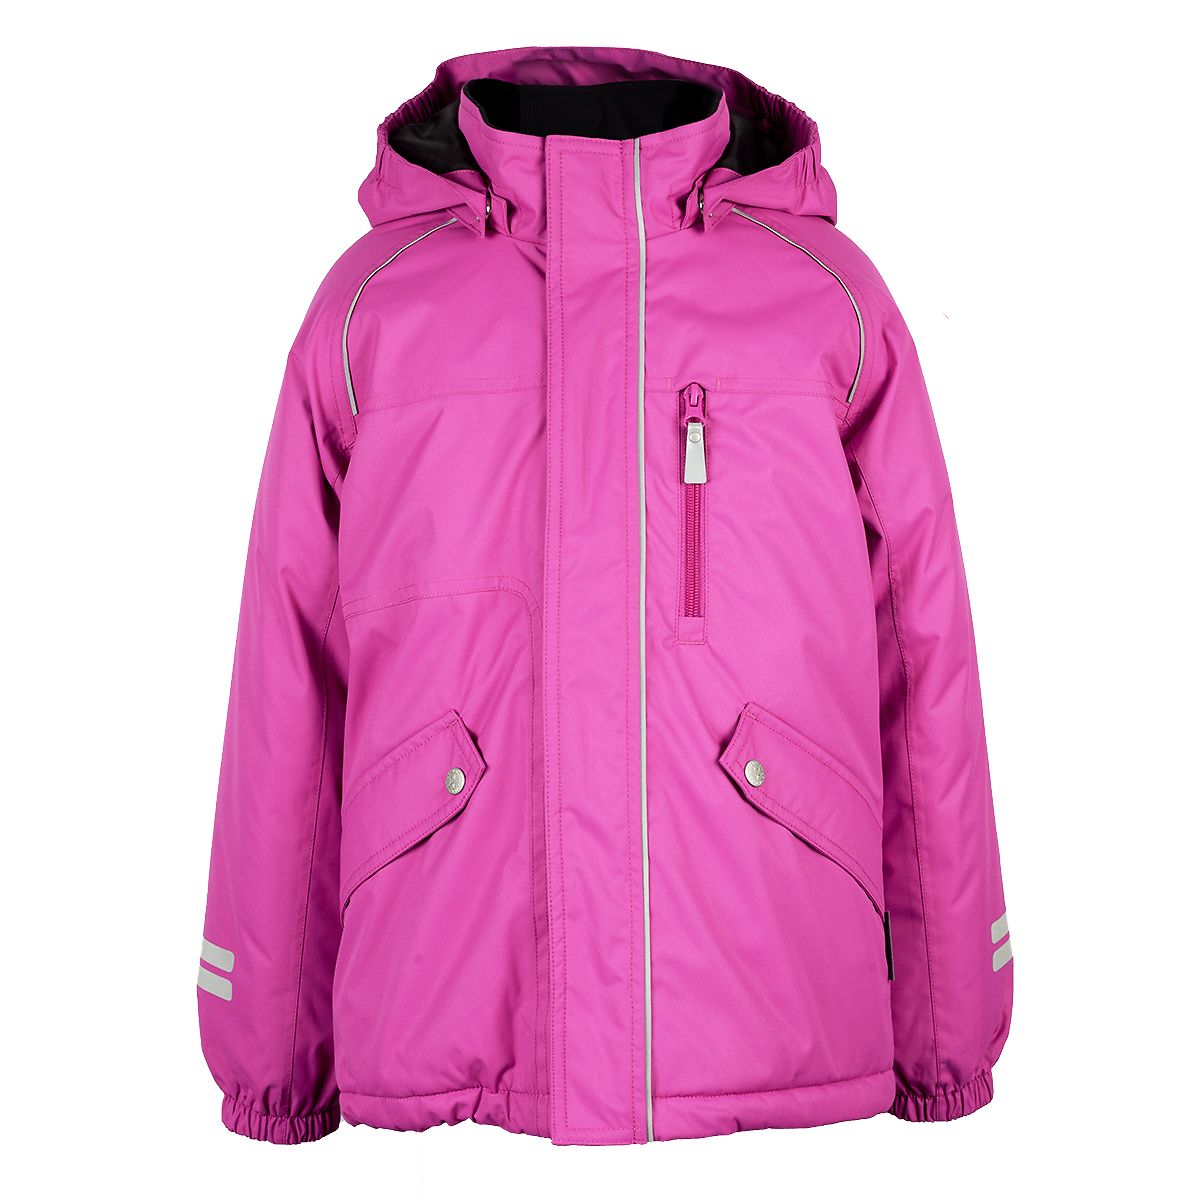 Tähti Jonathan winter jacket, pink (110-140 cm)